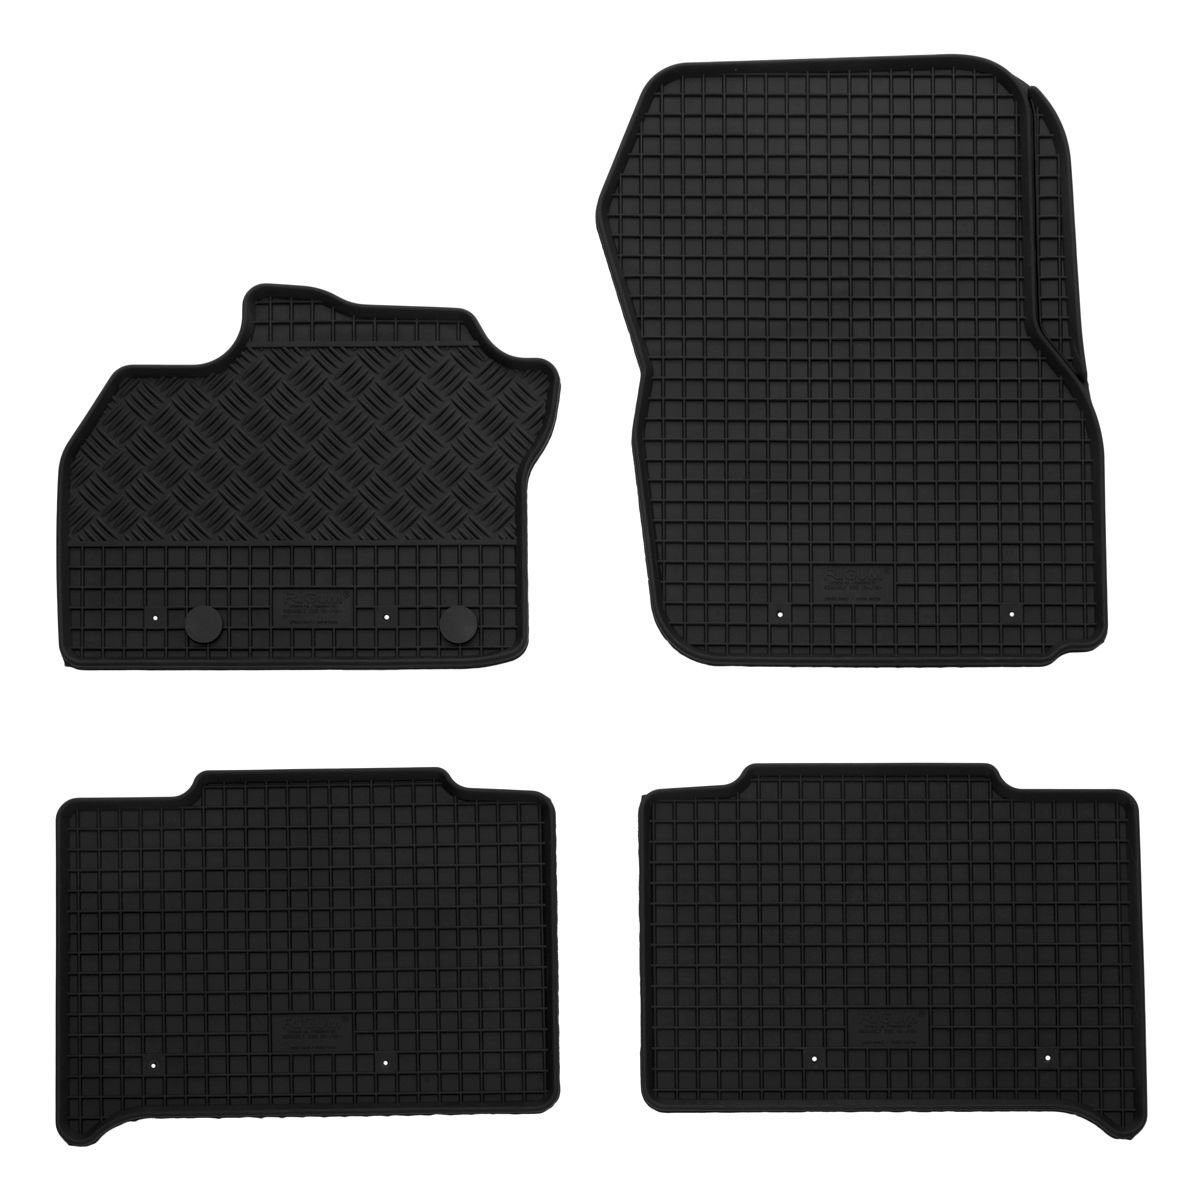 AZUGA Auto-Fußmatten Gummi-Fußmatten passend für Renault Kadjar ab 2015,  für Renault Kadjar SUV, passgenaue Gummimatten für Renault Kadjar ab 2015 -  KEINE Universalmatten